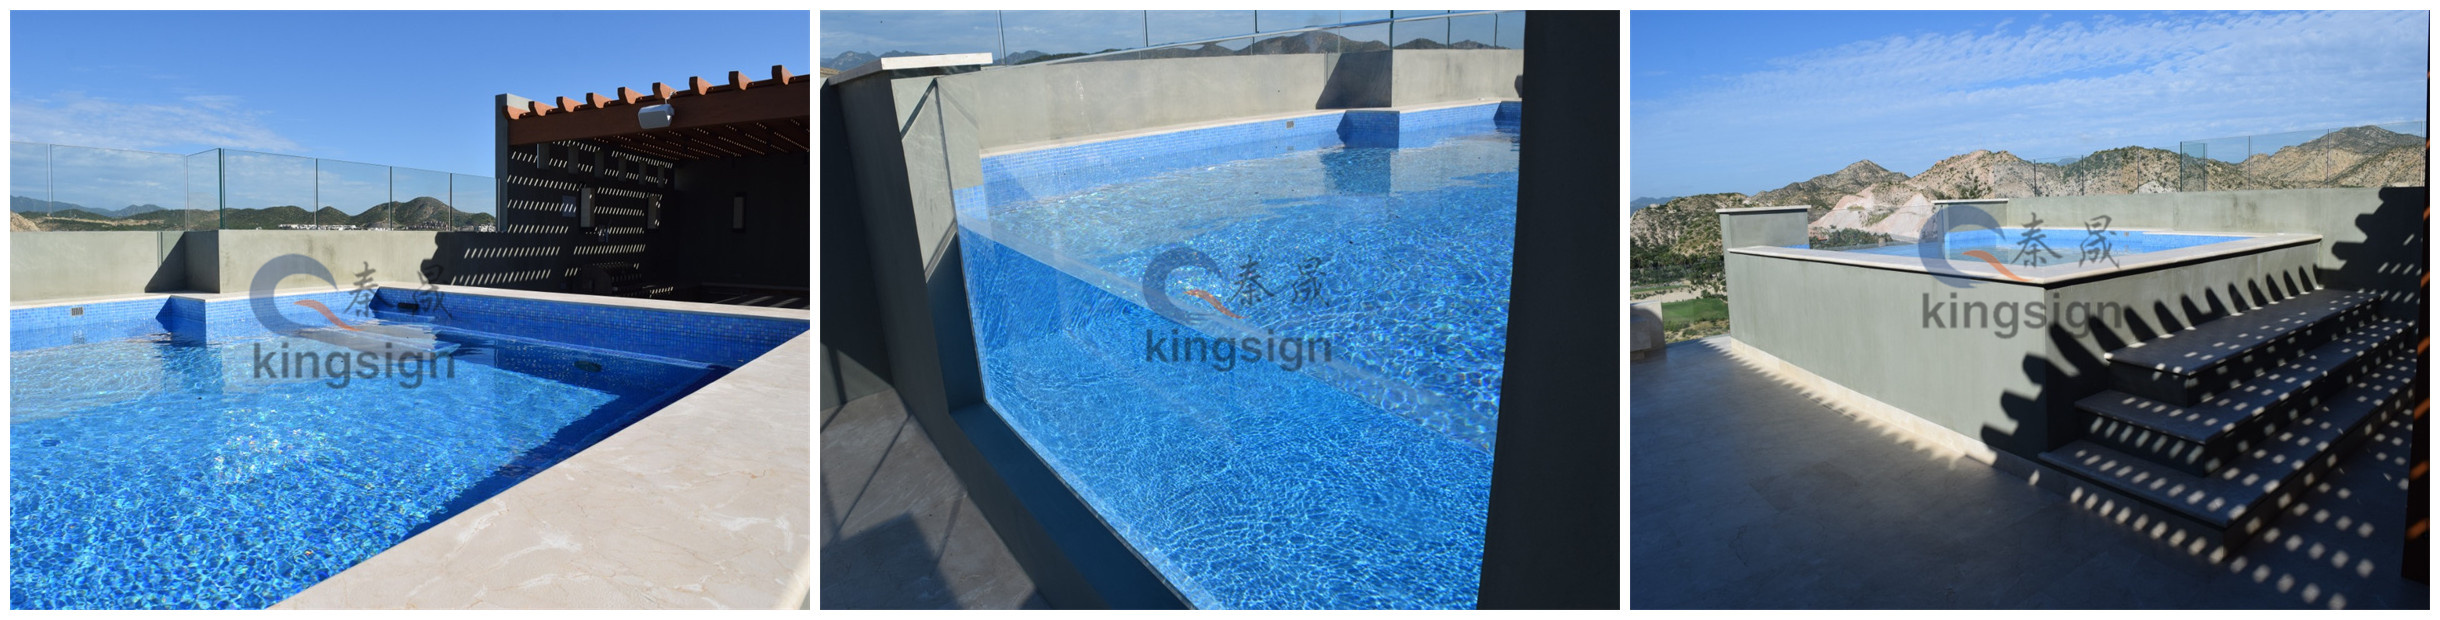 Proč zvolit akryl místo skla pro průhledný bazén?